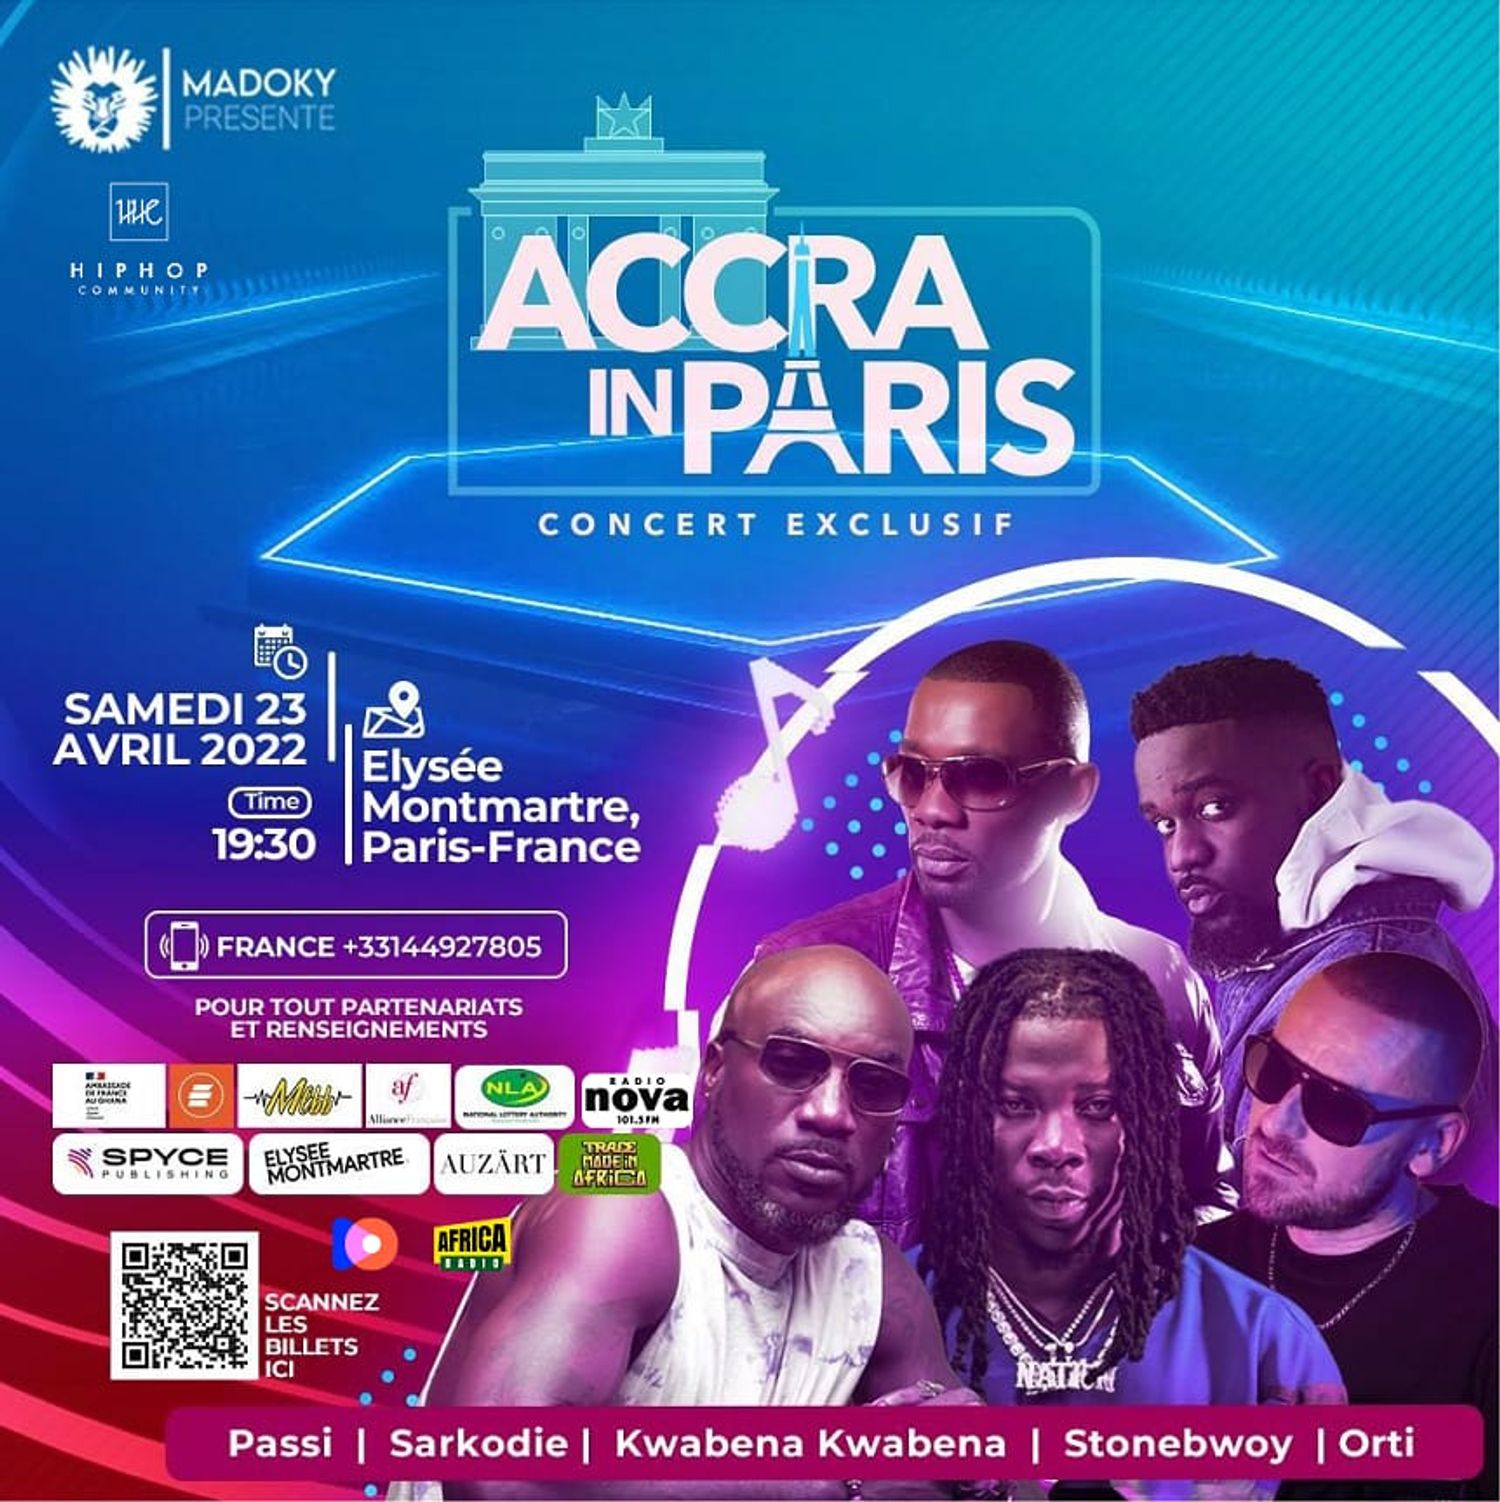 Accra in Paris